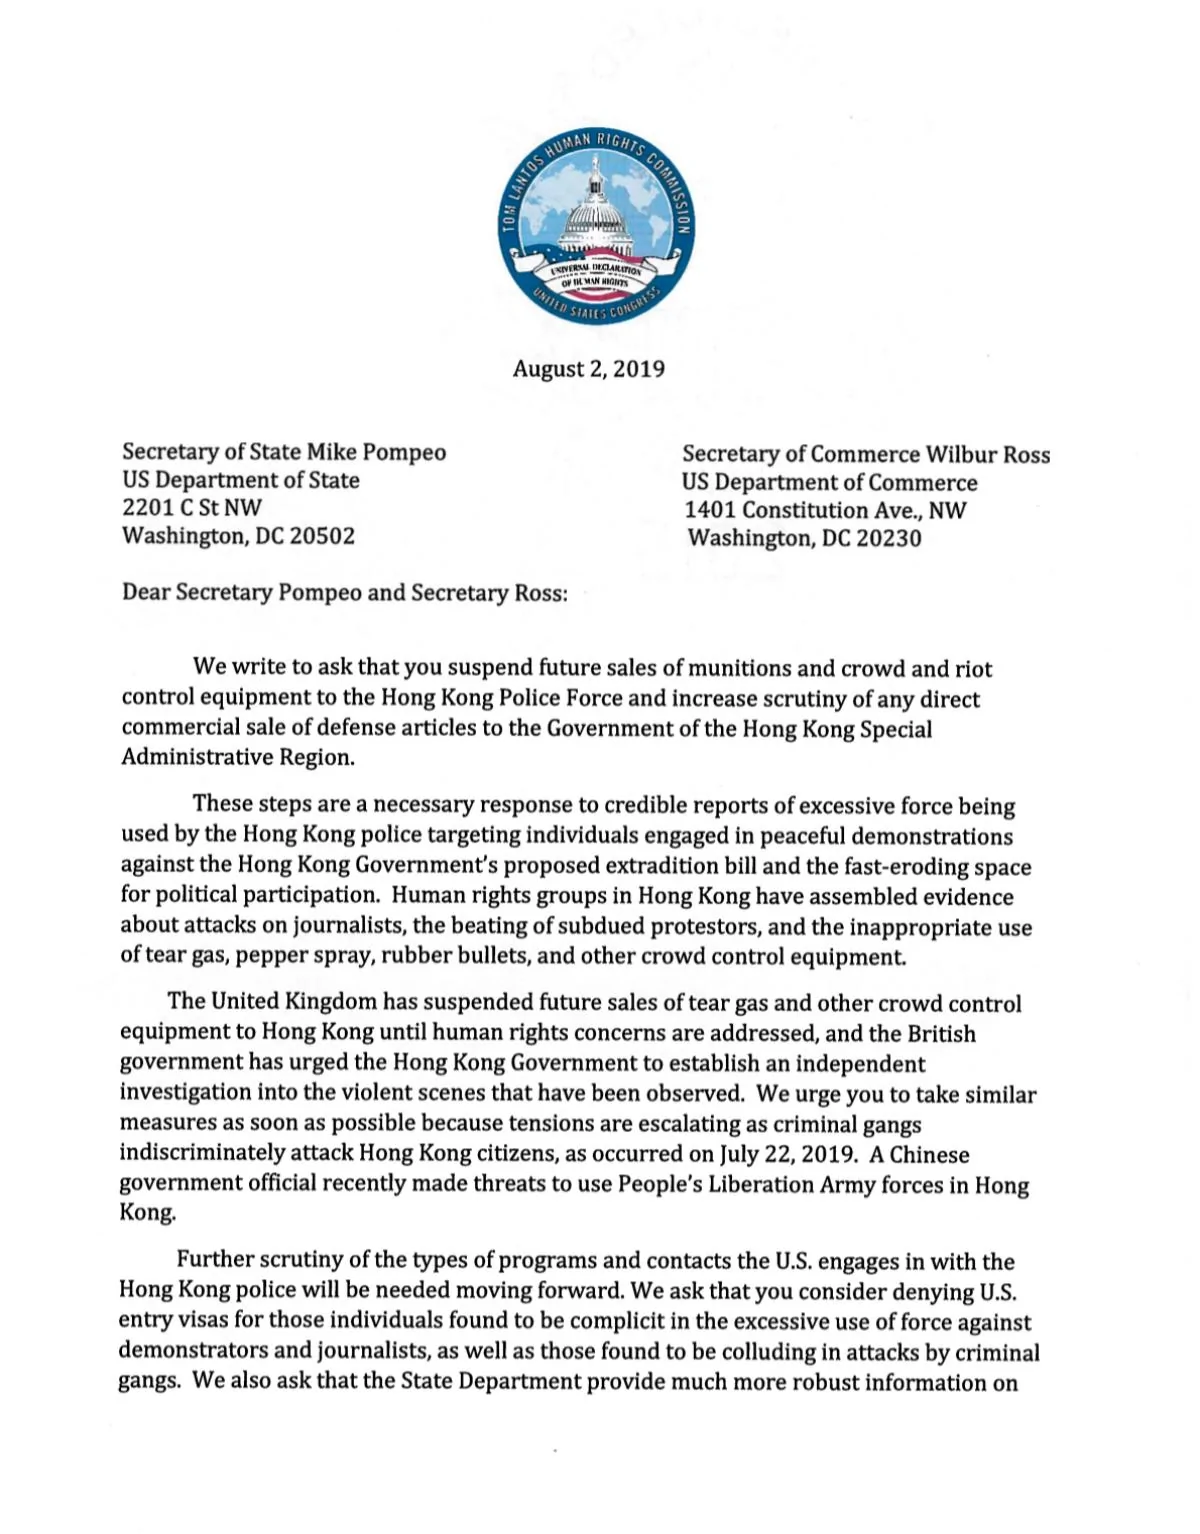 黄之峰发起10万白宫联署达标两党议员正式去信国务卿要求美国停止出售武器予香港黑警 阿波罗新闻网